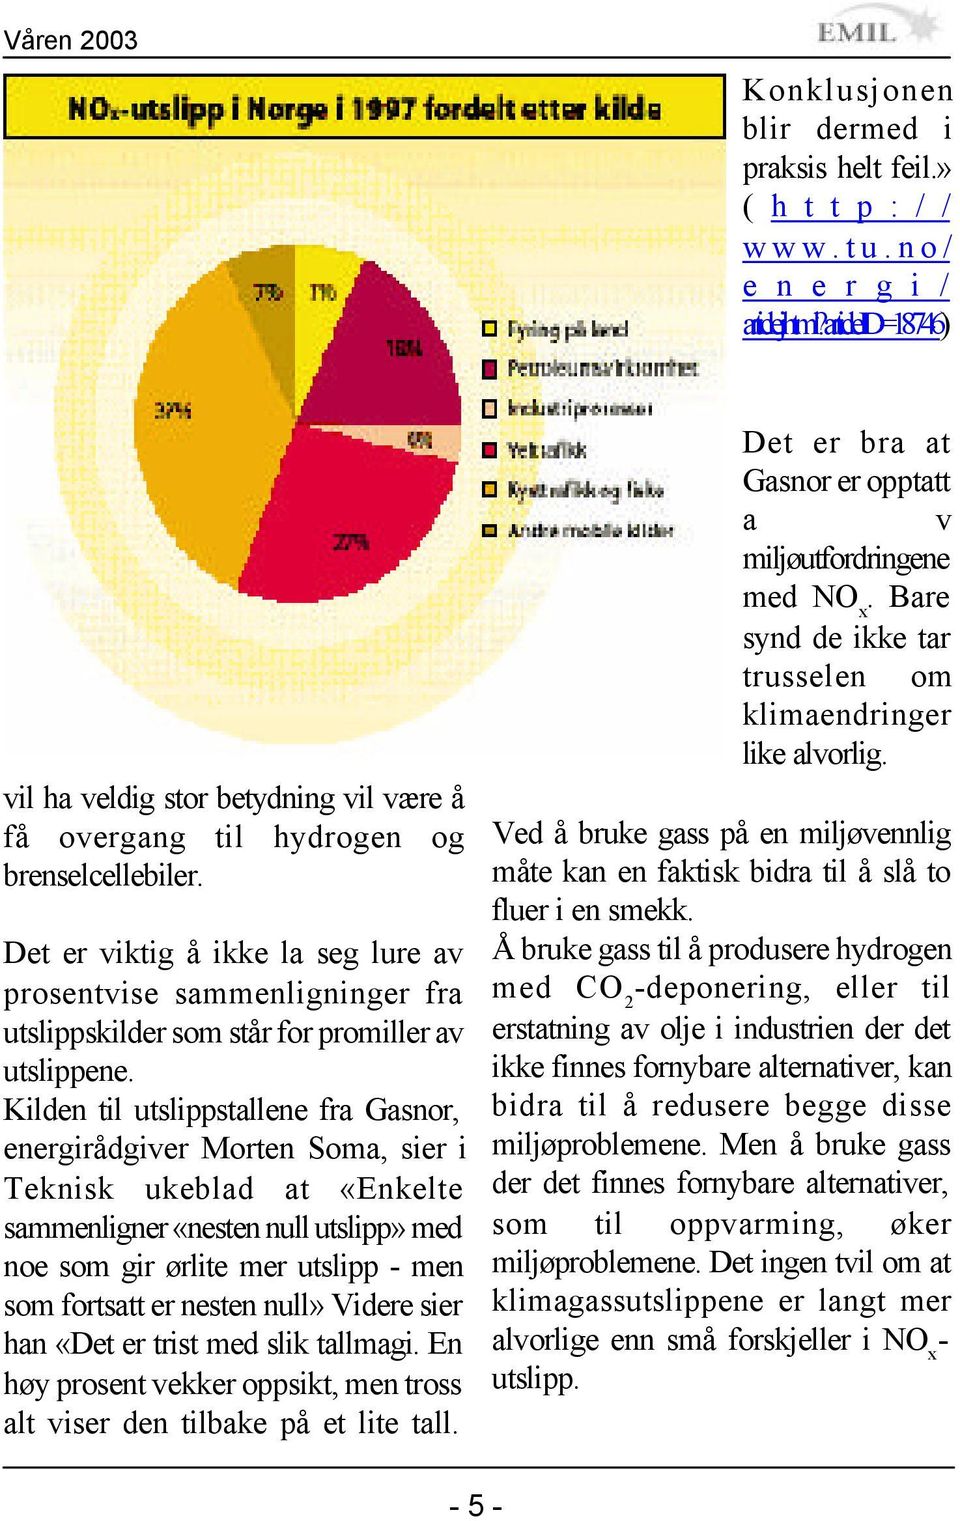 Det er viktig å ikke la seg lure av prosentvise sammenligninger fra utslippskilder som står for promiller av utslippene.